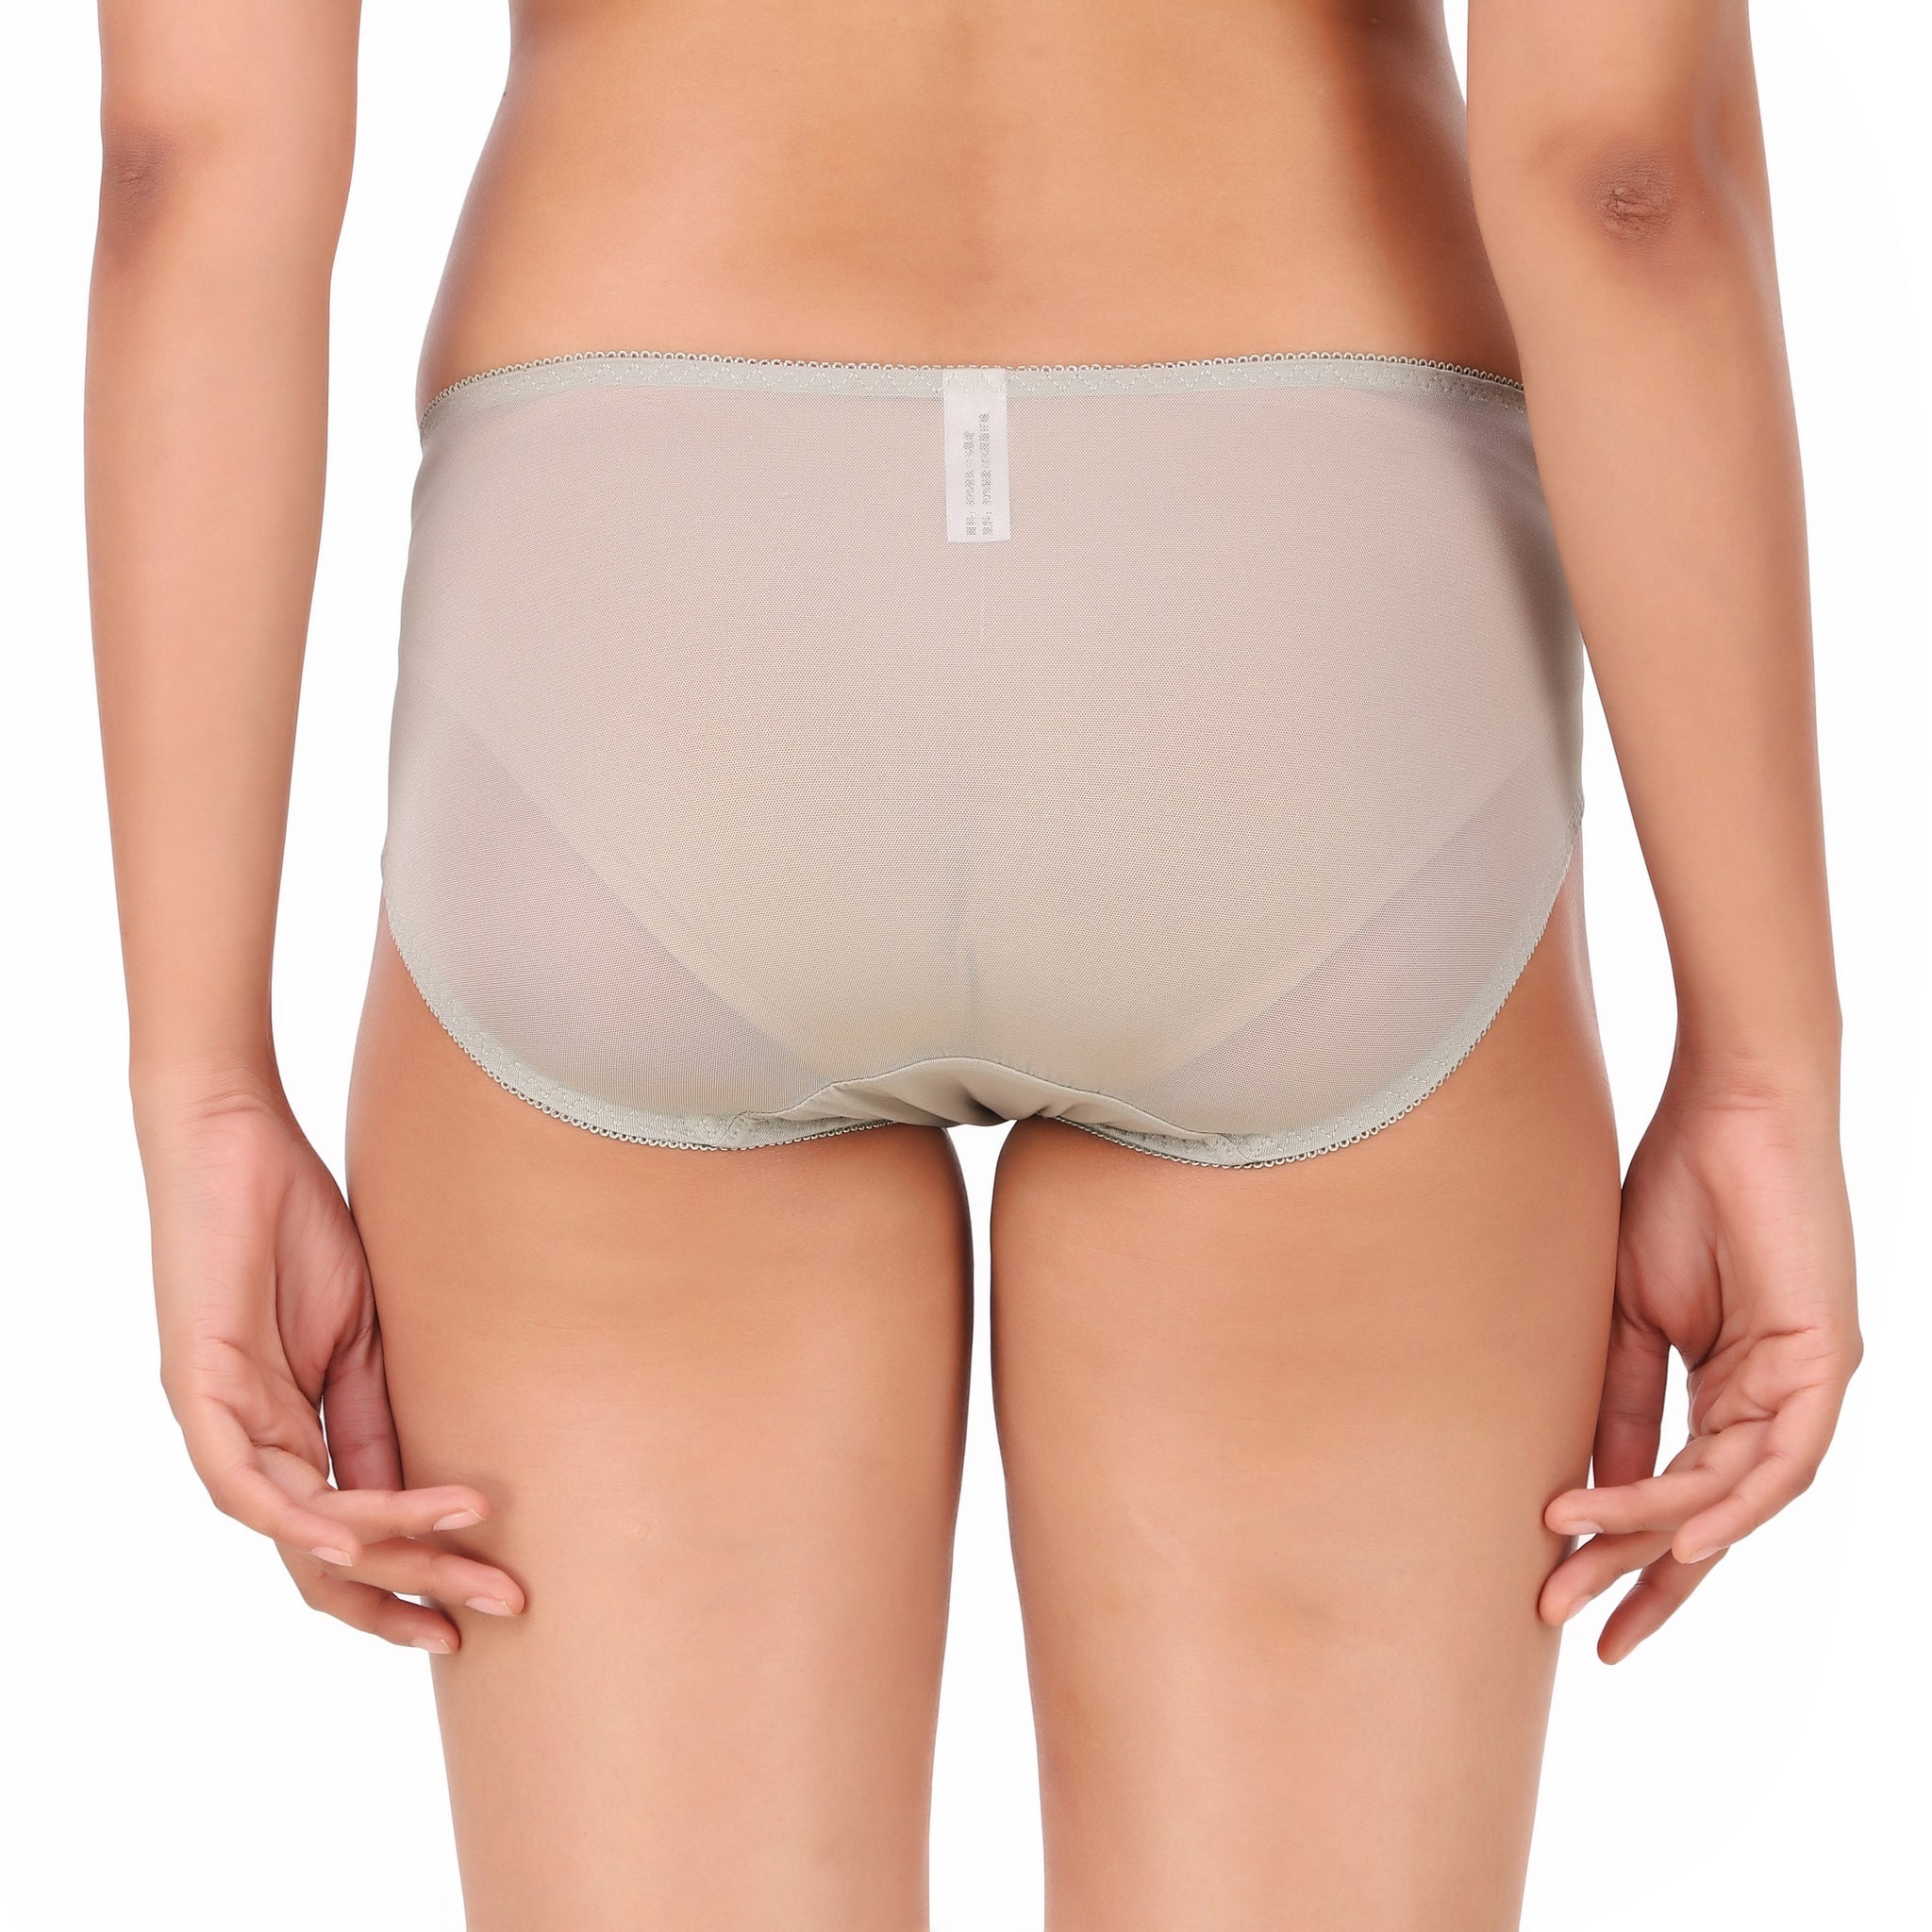 AXTZH-XBRA117  Designs Fashionable New Women Lace Bra Panty set